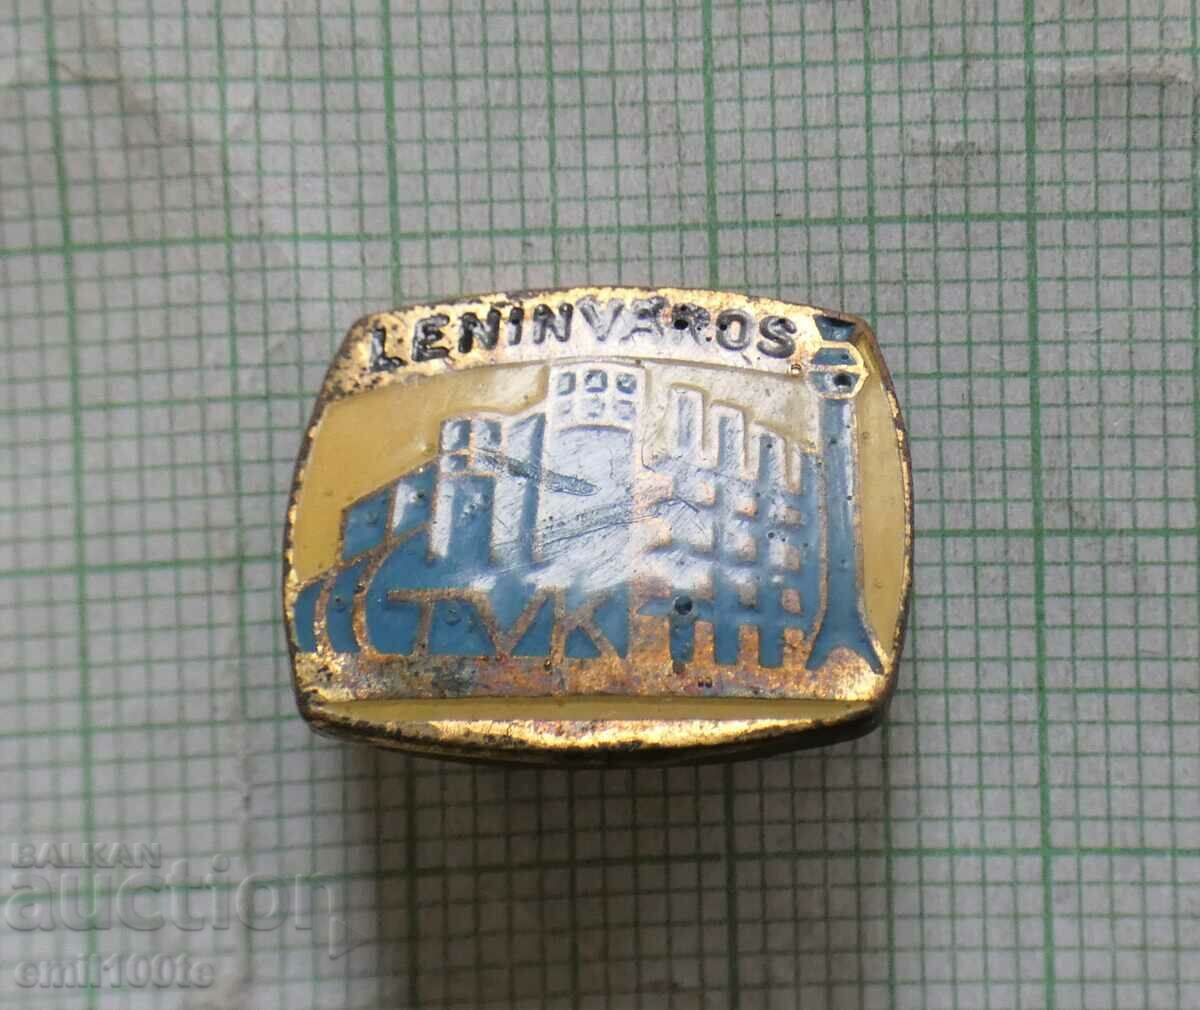 Badge- Leninvaros Leningrad in Hungary